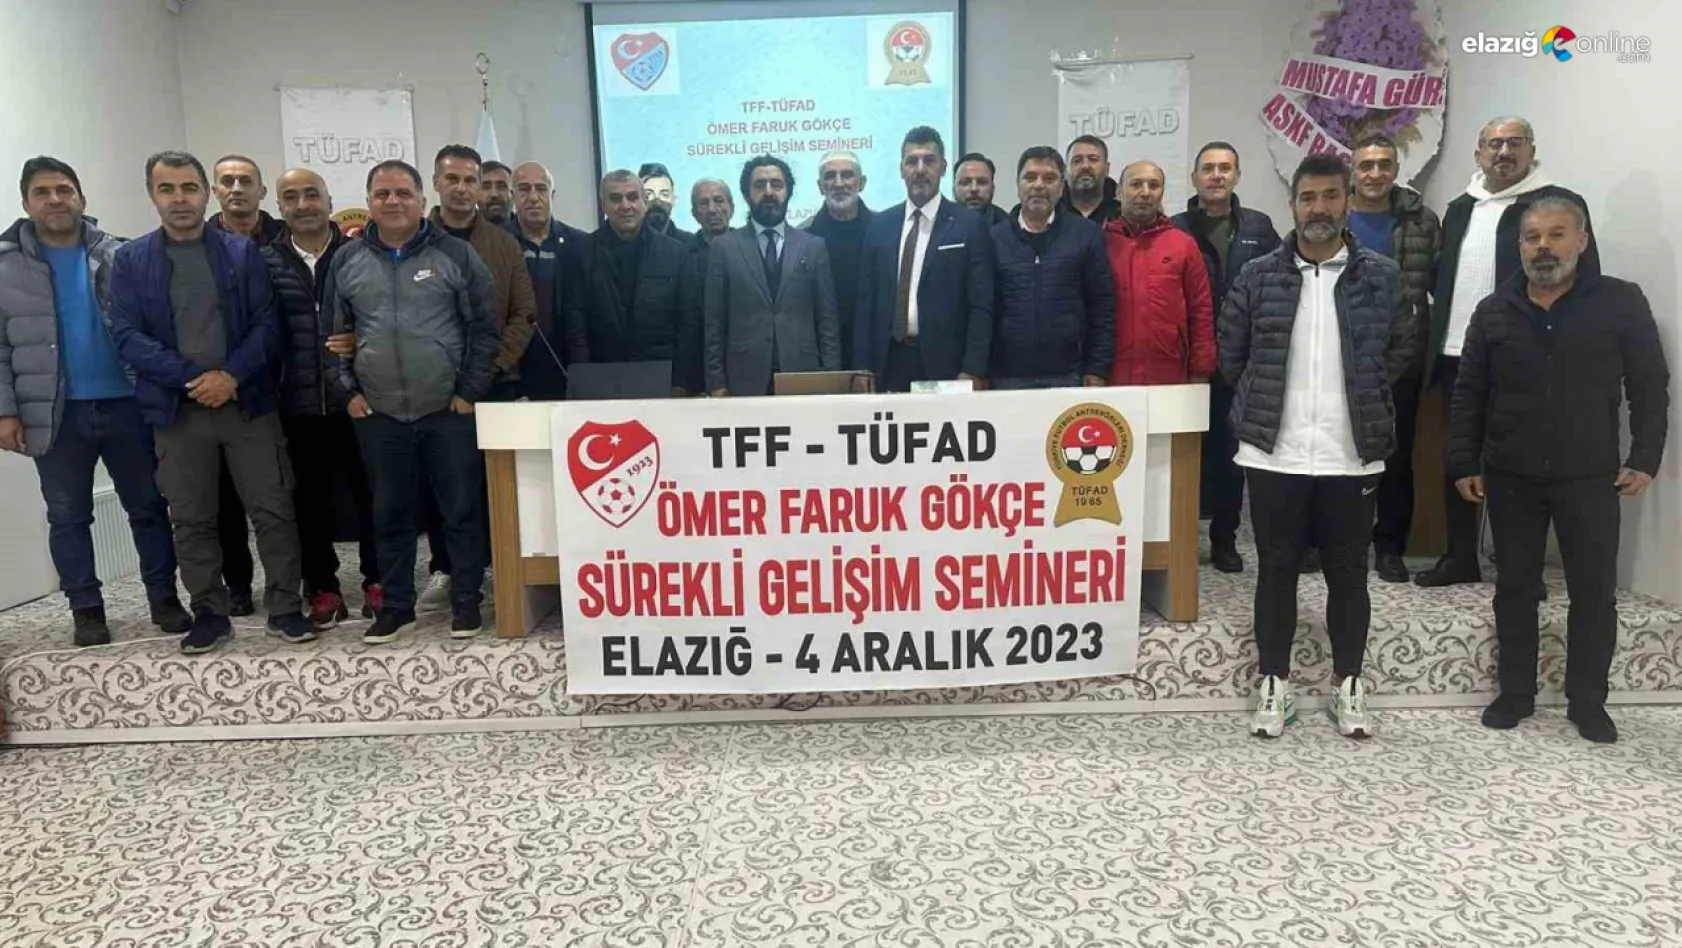 'Ömer Faruk Gökçe' gelişim semineri Elazığ'da gerçekleştirildi